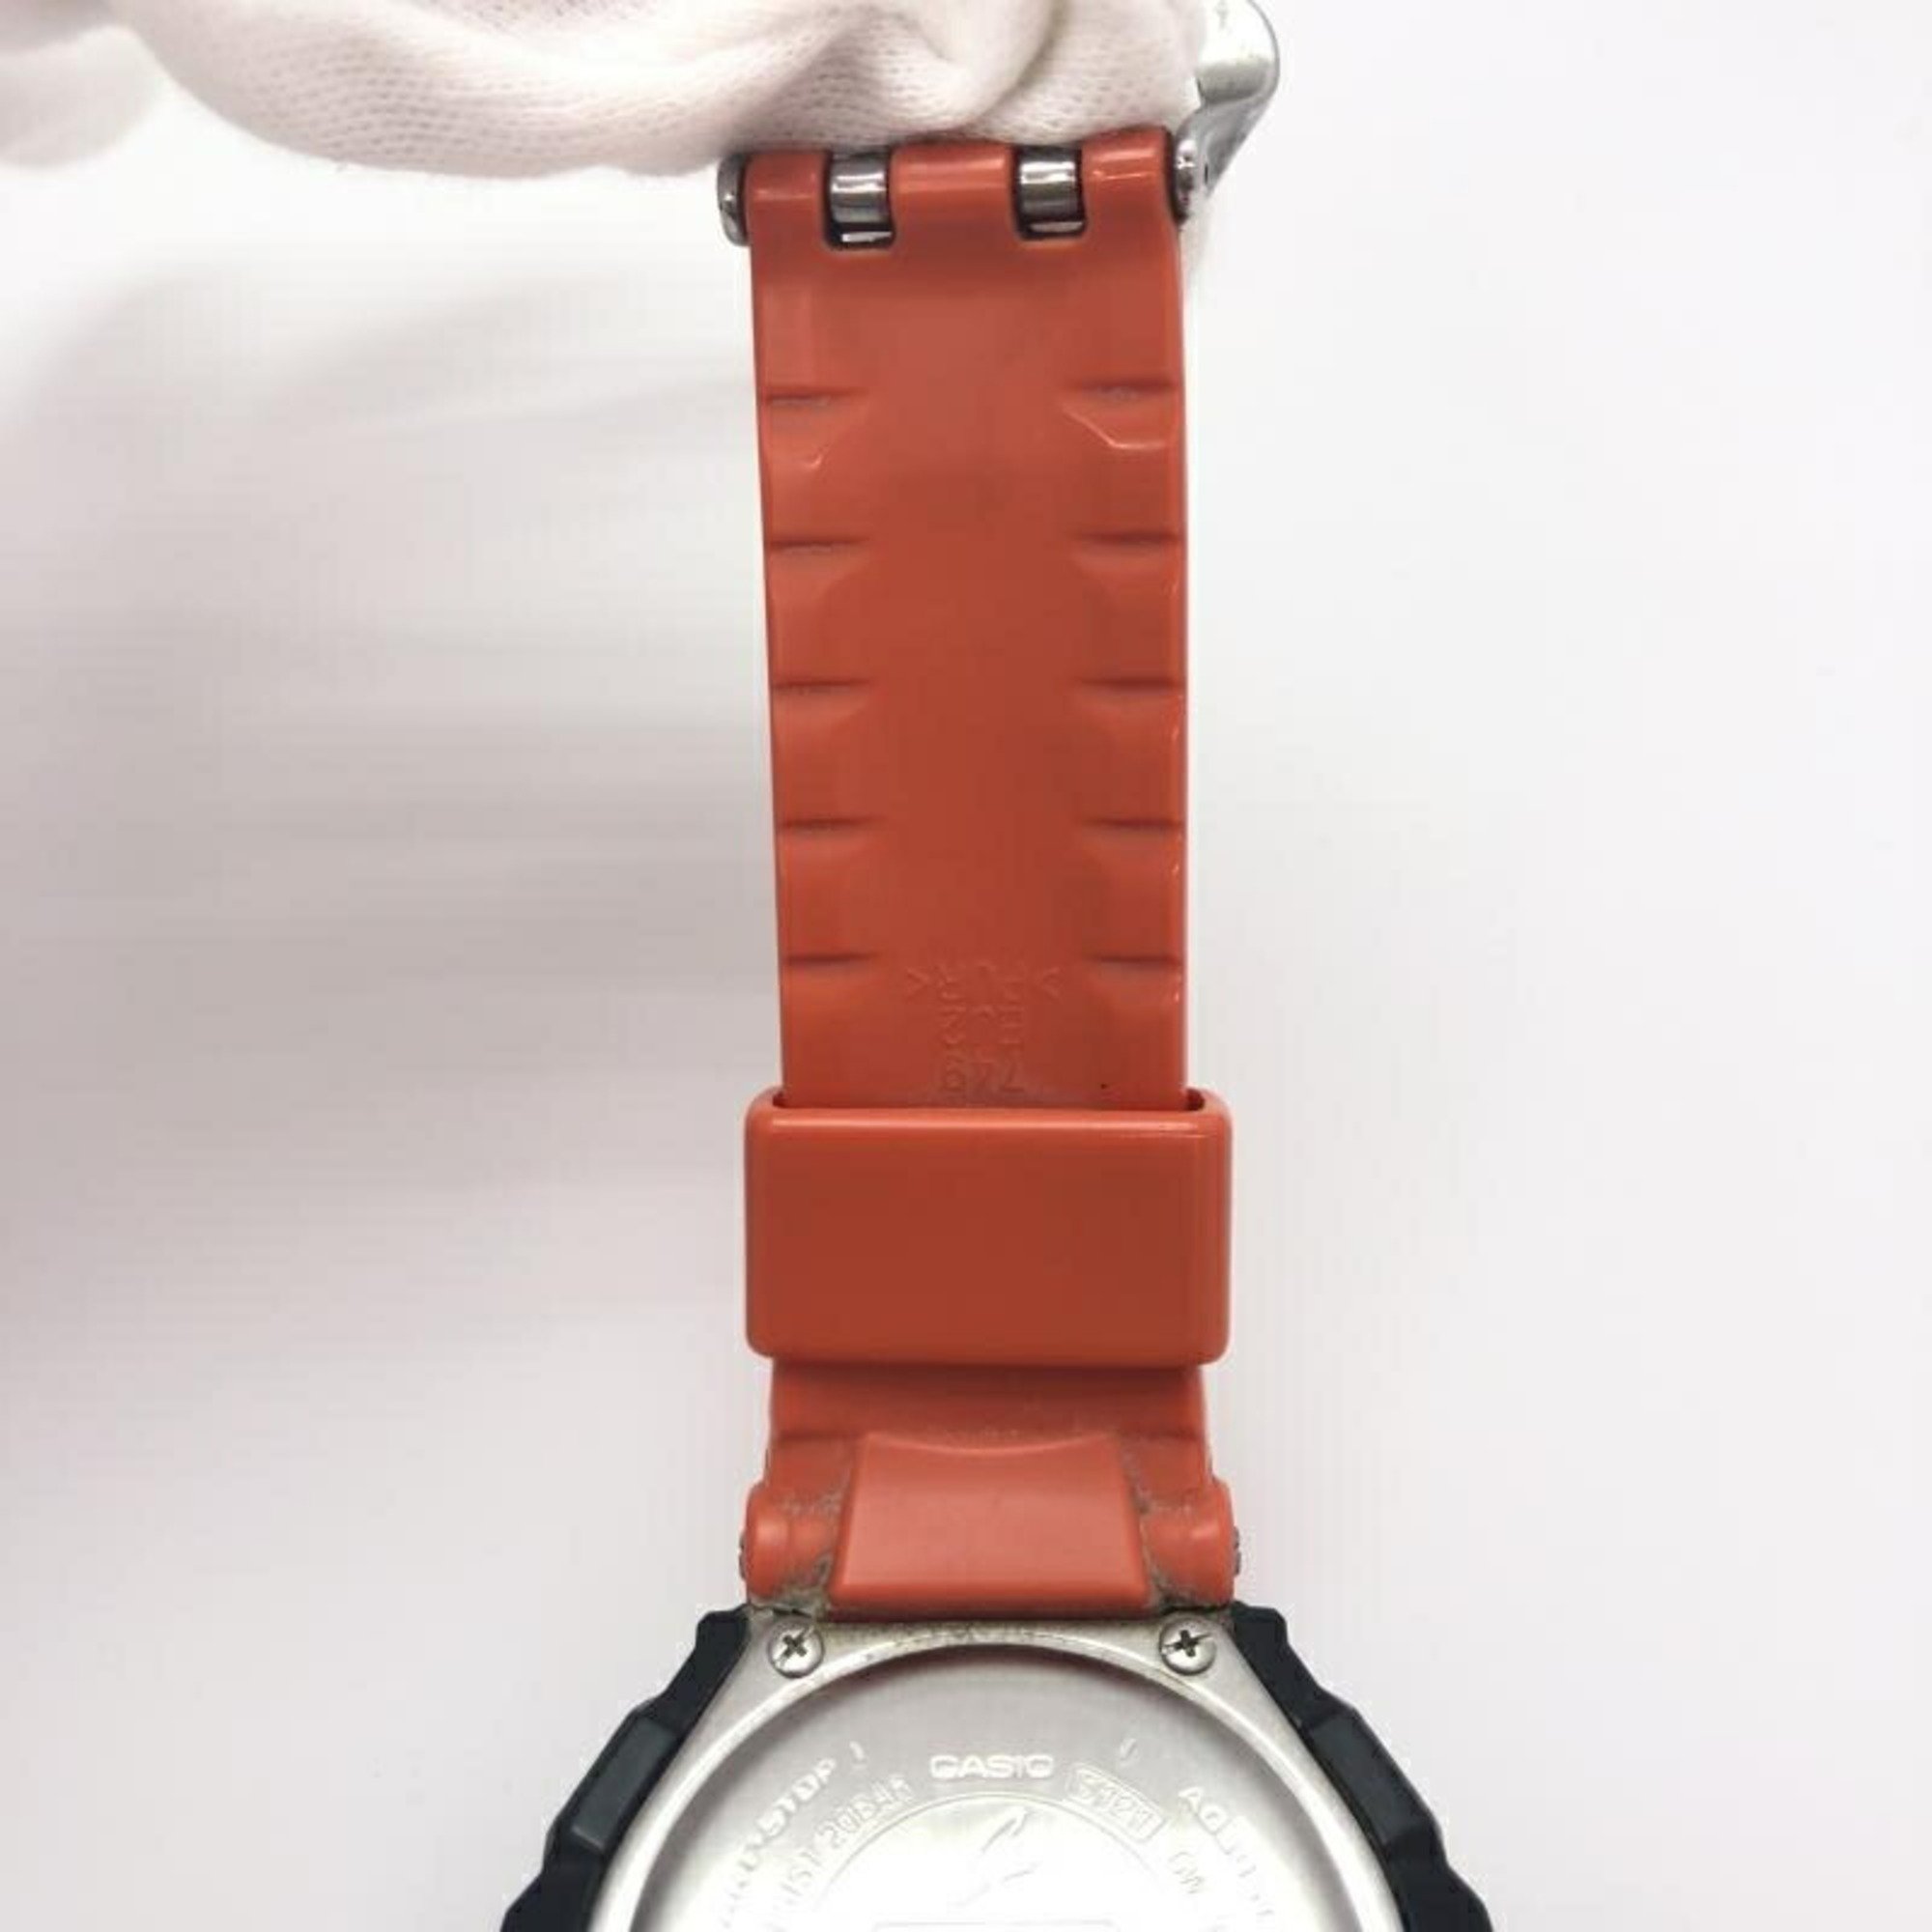 CASIO G-SHOCK GW-3000B-1AJF Radio Solar Watch Orange G-Shock